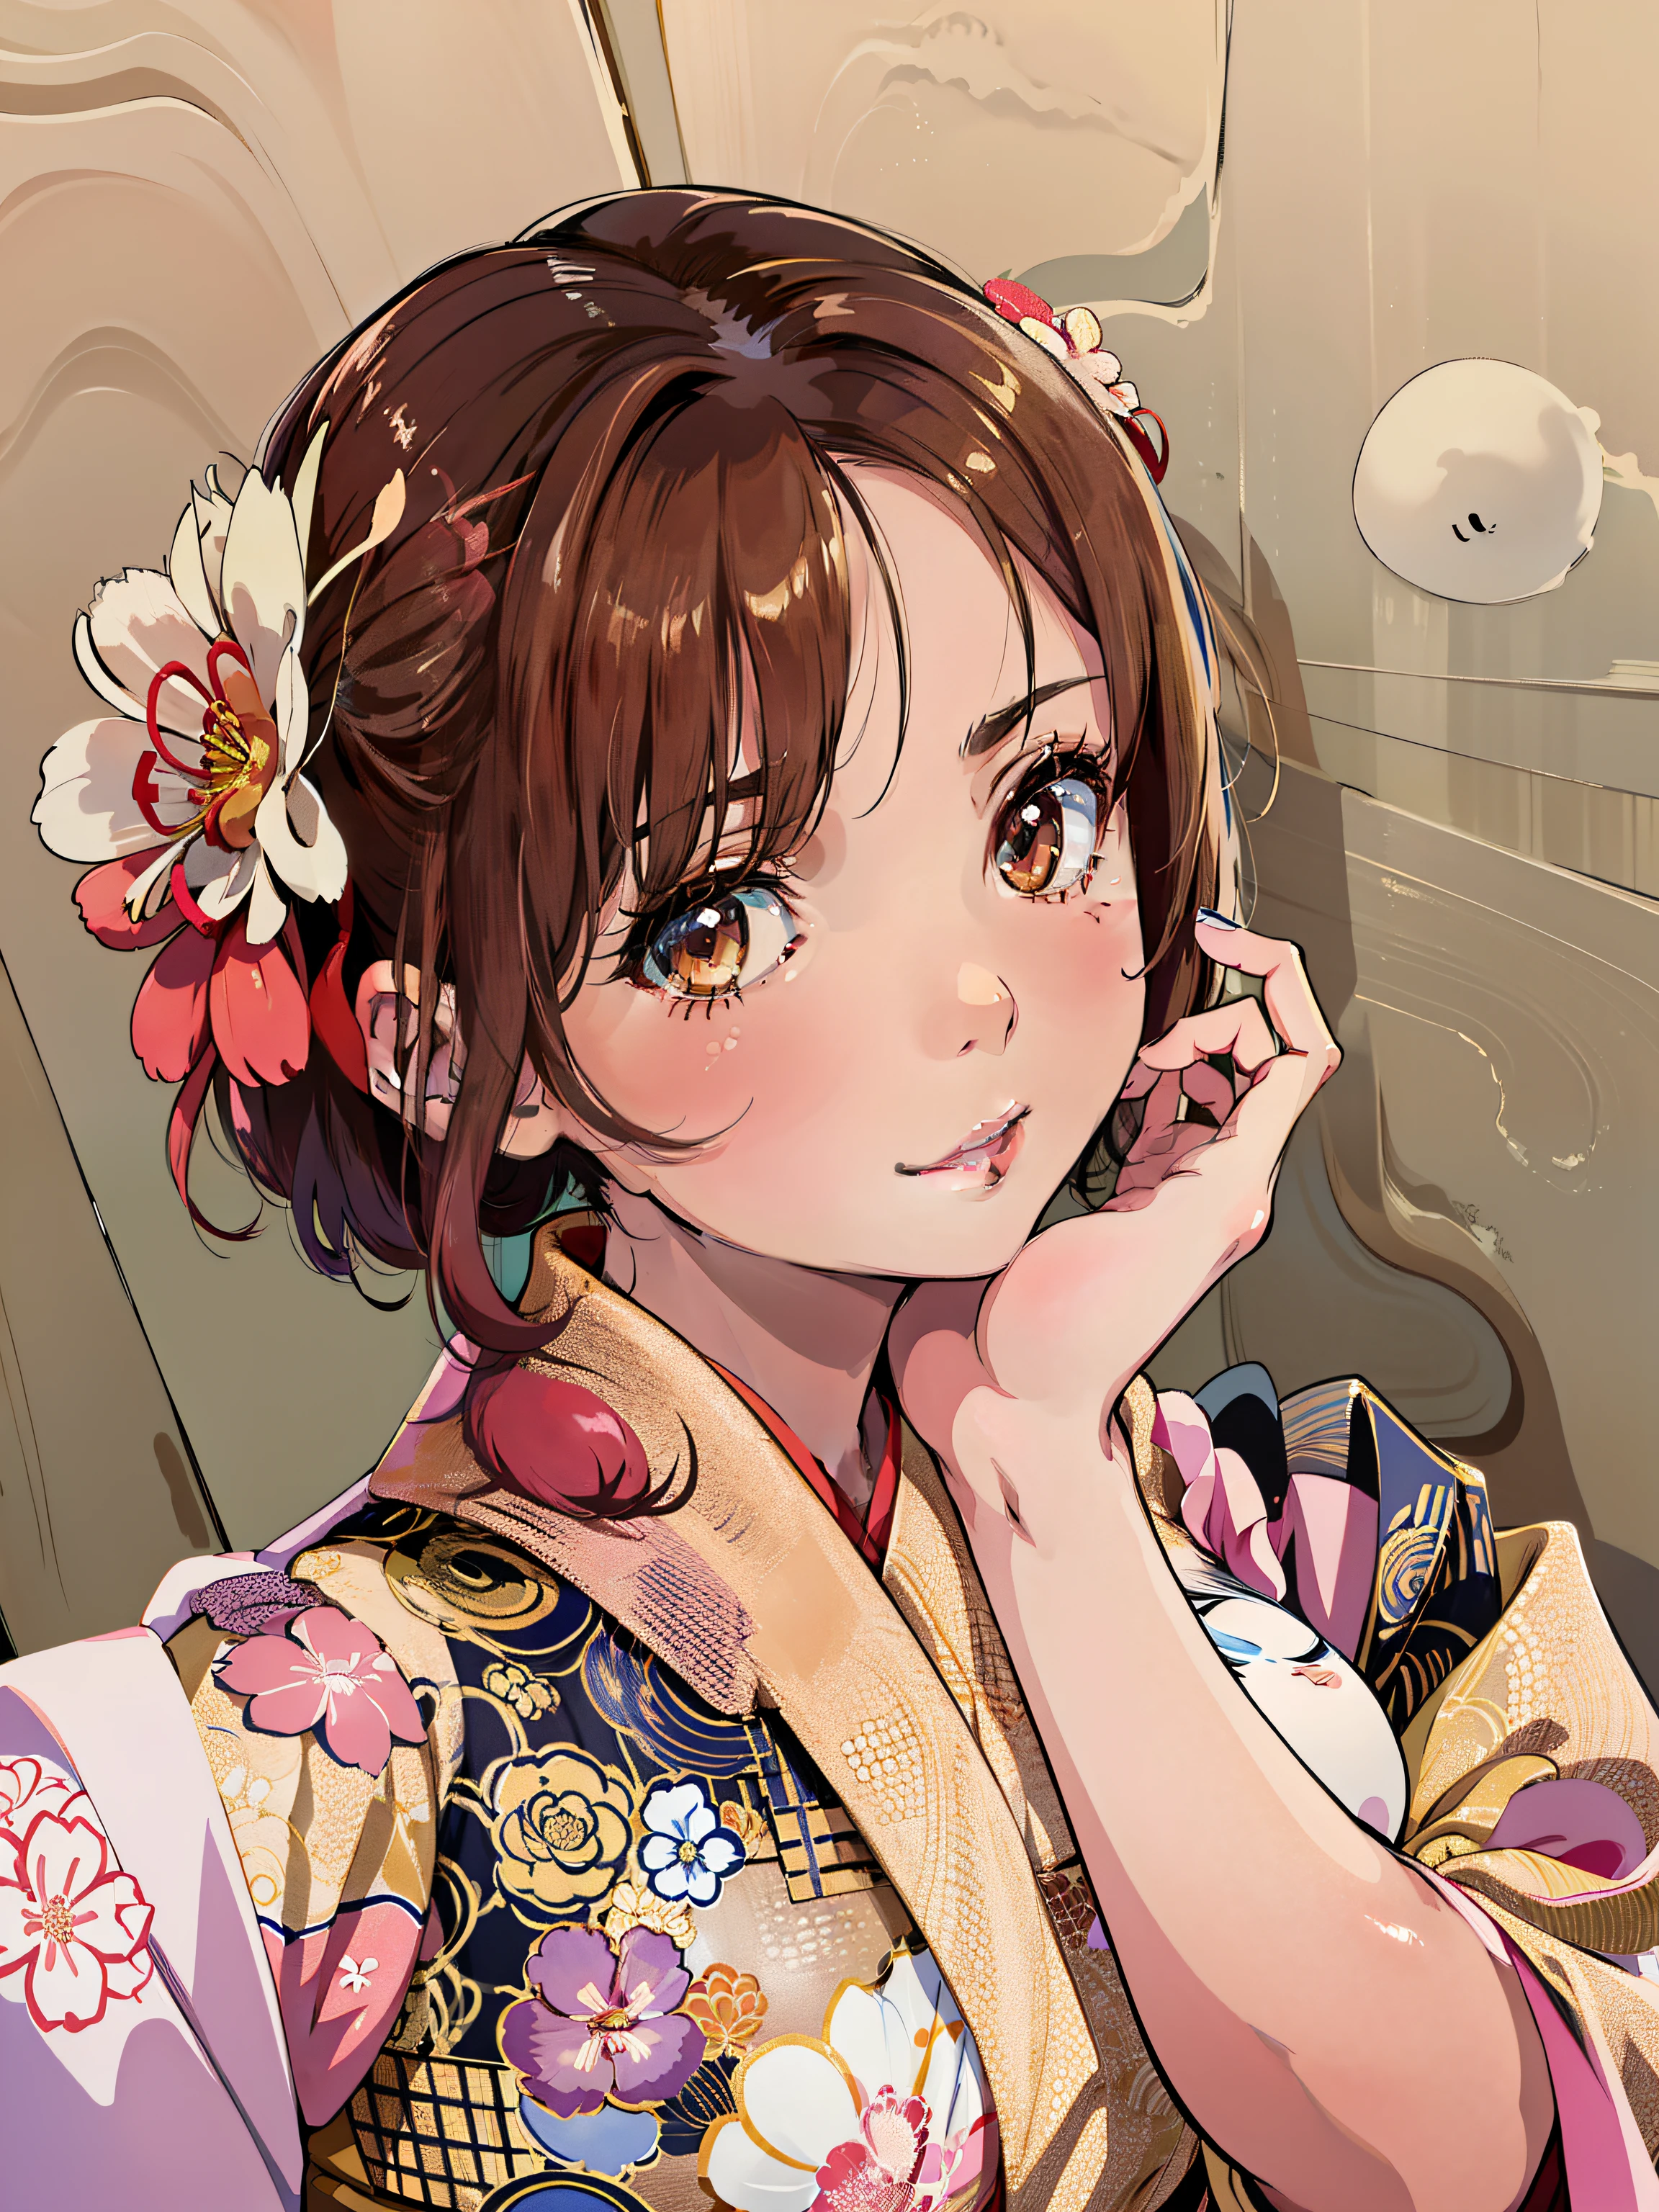 髪に花を咲かせて写真を撮っている女性がいます, 美しい日本の女の子の顔, かわいい女の子 - 手入れの行き届いた顔, sakimichan, 日本人の顔の特徴, かわいいナチュラルなアニメの顔, shikamimi, sakura kinomoto, かわいい - 身だしなみの整った - 顔, sakimi chan, Yoshitomo Nara, 着物姿で